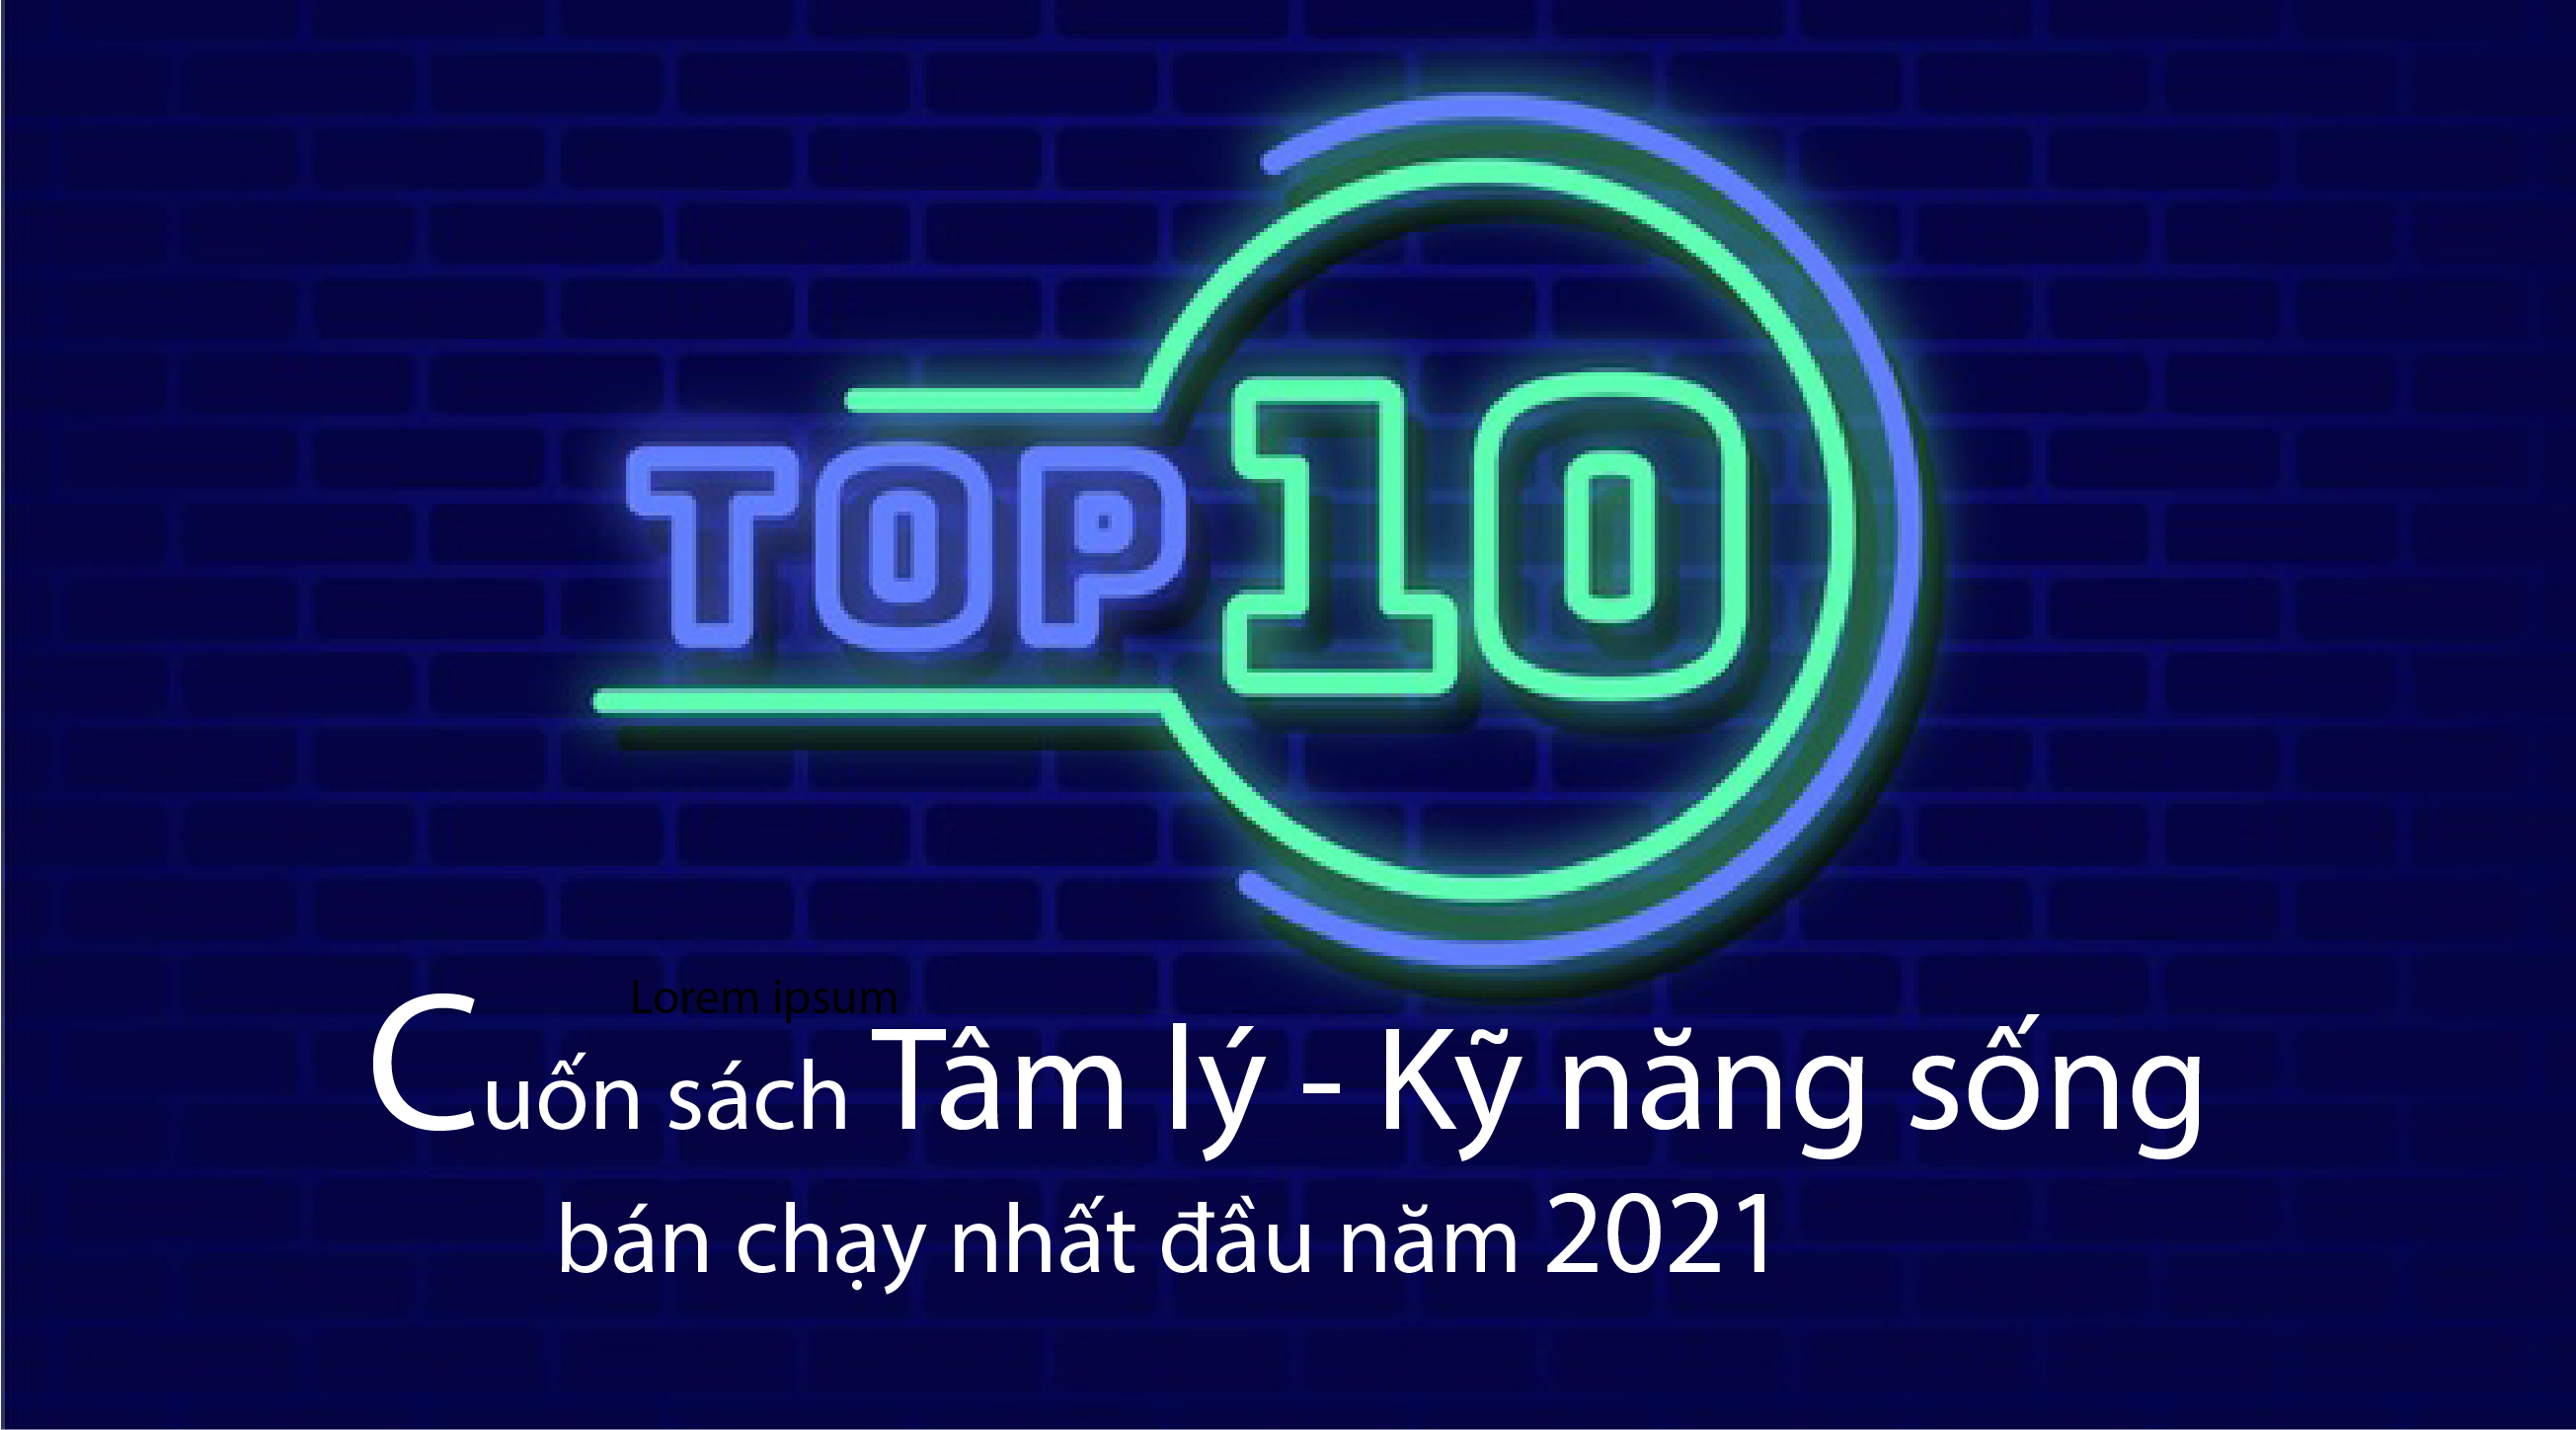 Top 10 cuốn sách Tâm lý - Kỹ năng sống bán chạy nhất đầu năm 2021 9